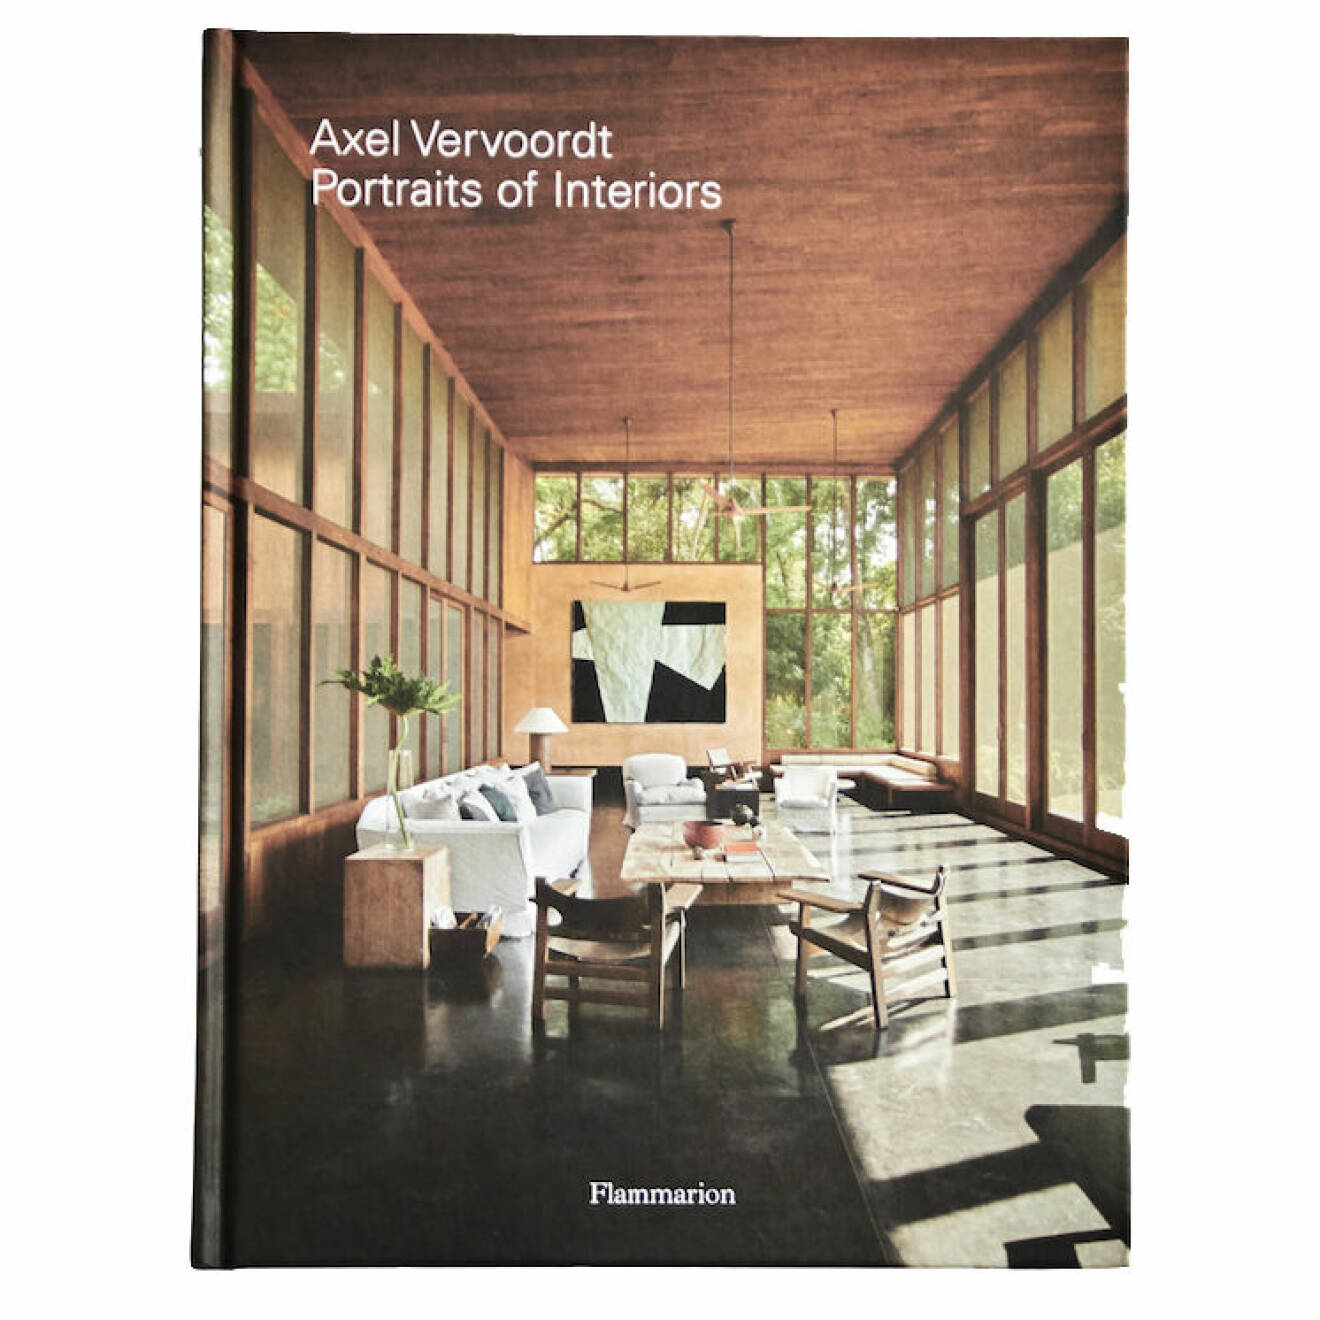 En coffee table-bok på min önskelista är Axel Vervoordt: Portraits of interior!